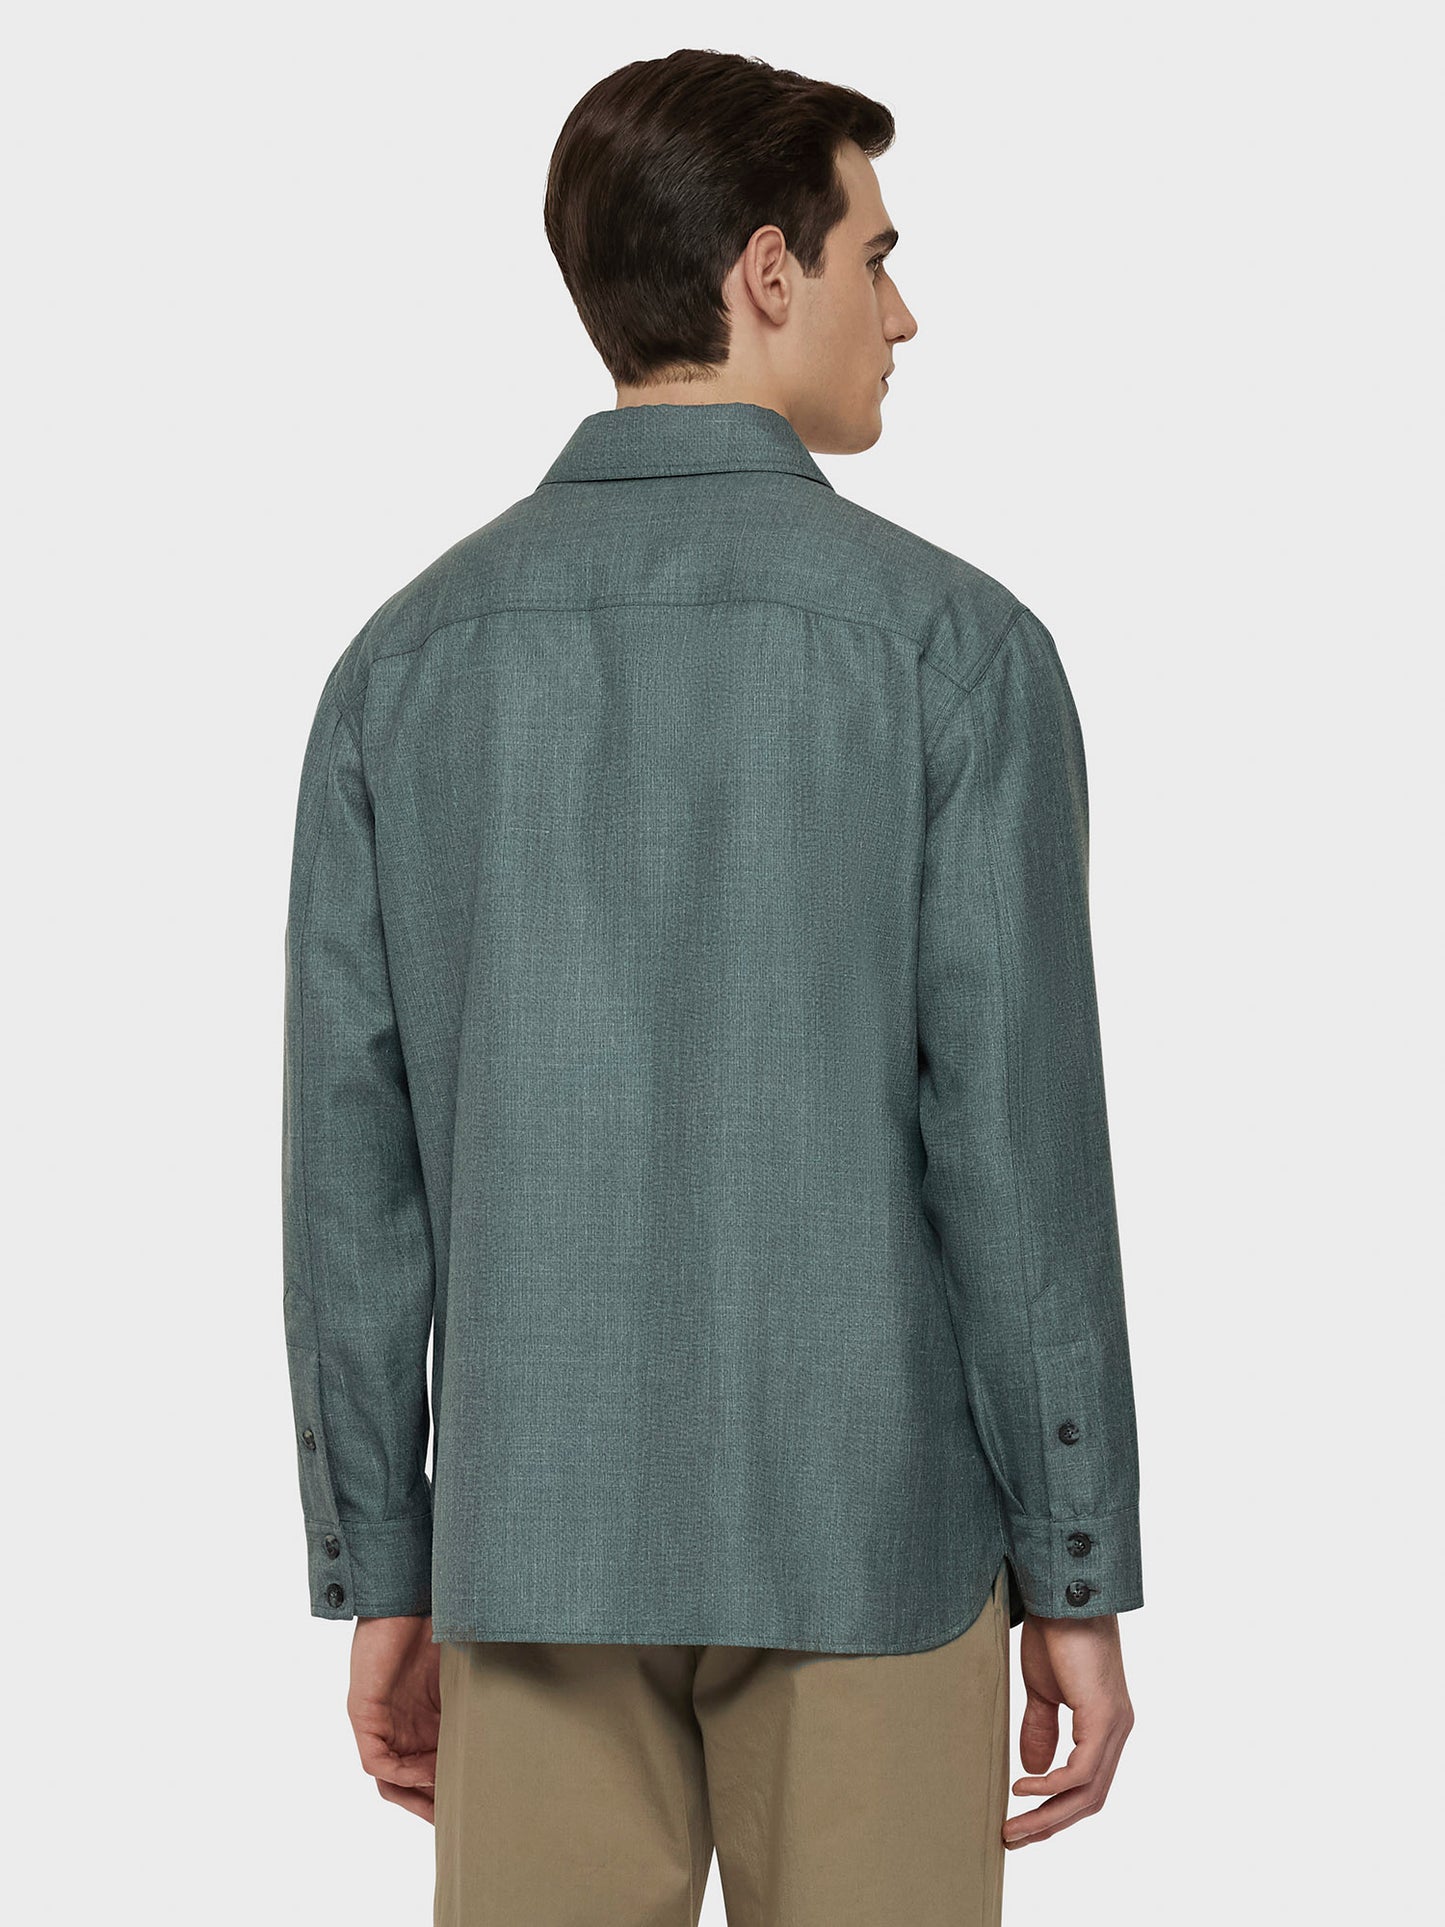 Caruso Menswear Abbigliamento Uomo Overshirt in lana, seta e lino verde indossato back